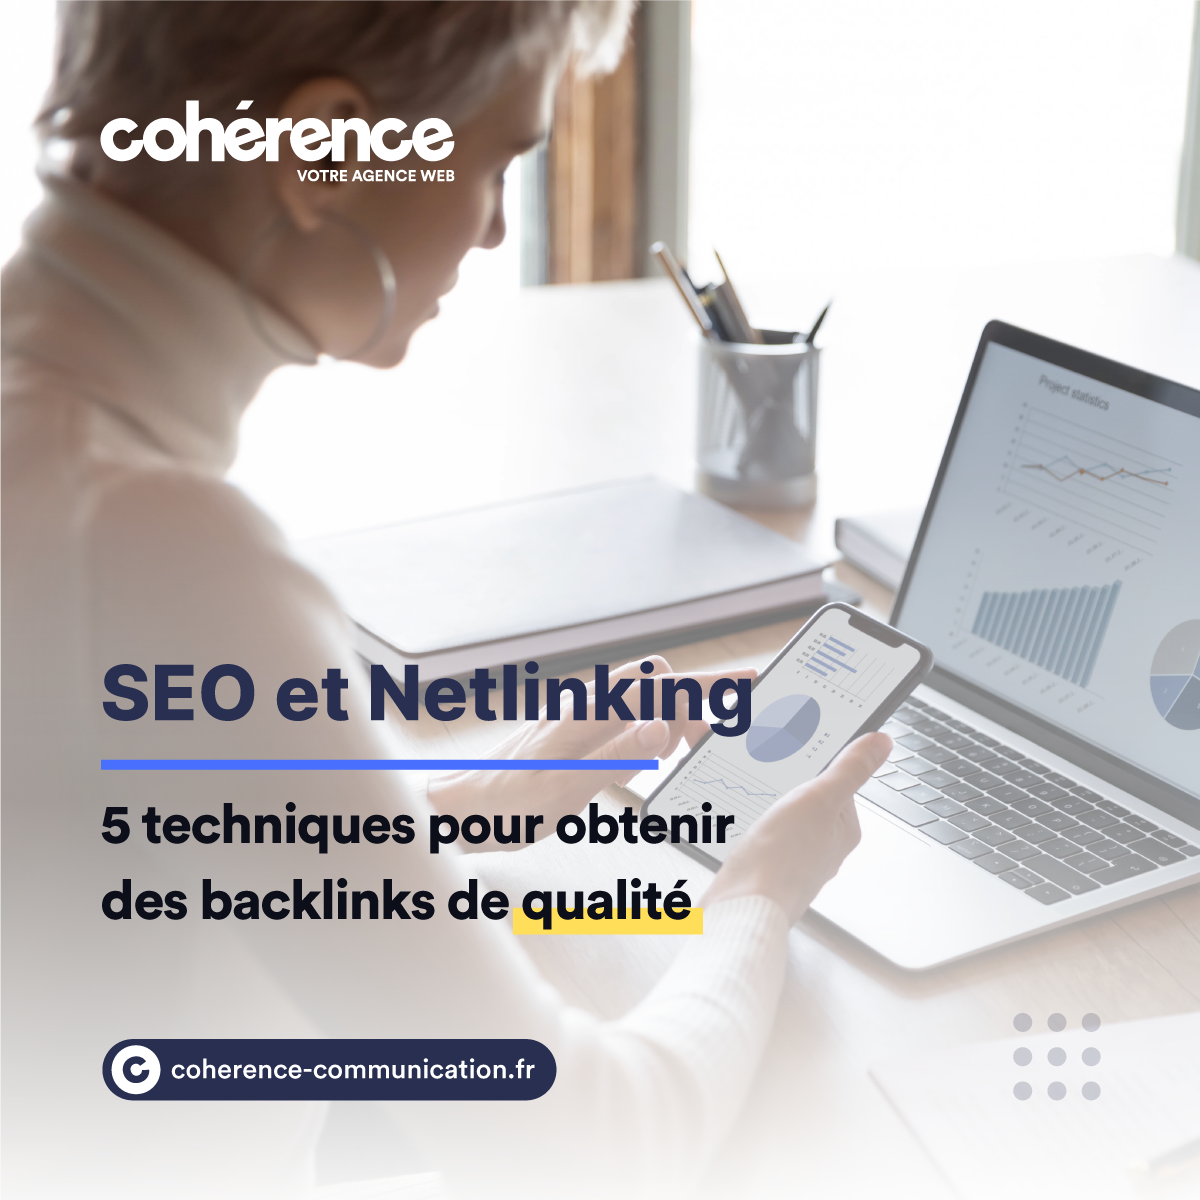 Coherence Agence Web A Rennes SEO Et Netlinking 5 Techniques Pour Obtenir Des Backlinks De Qualite